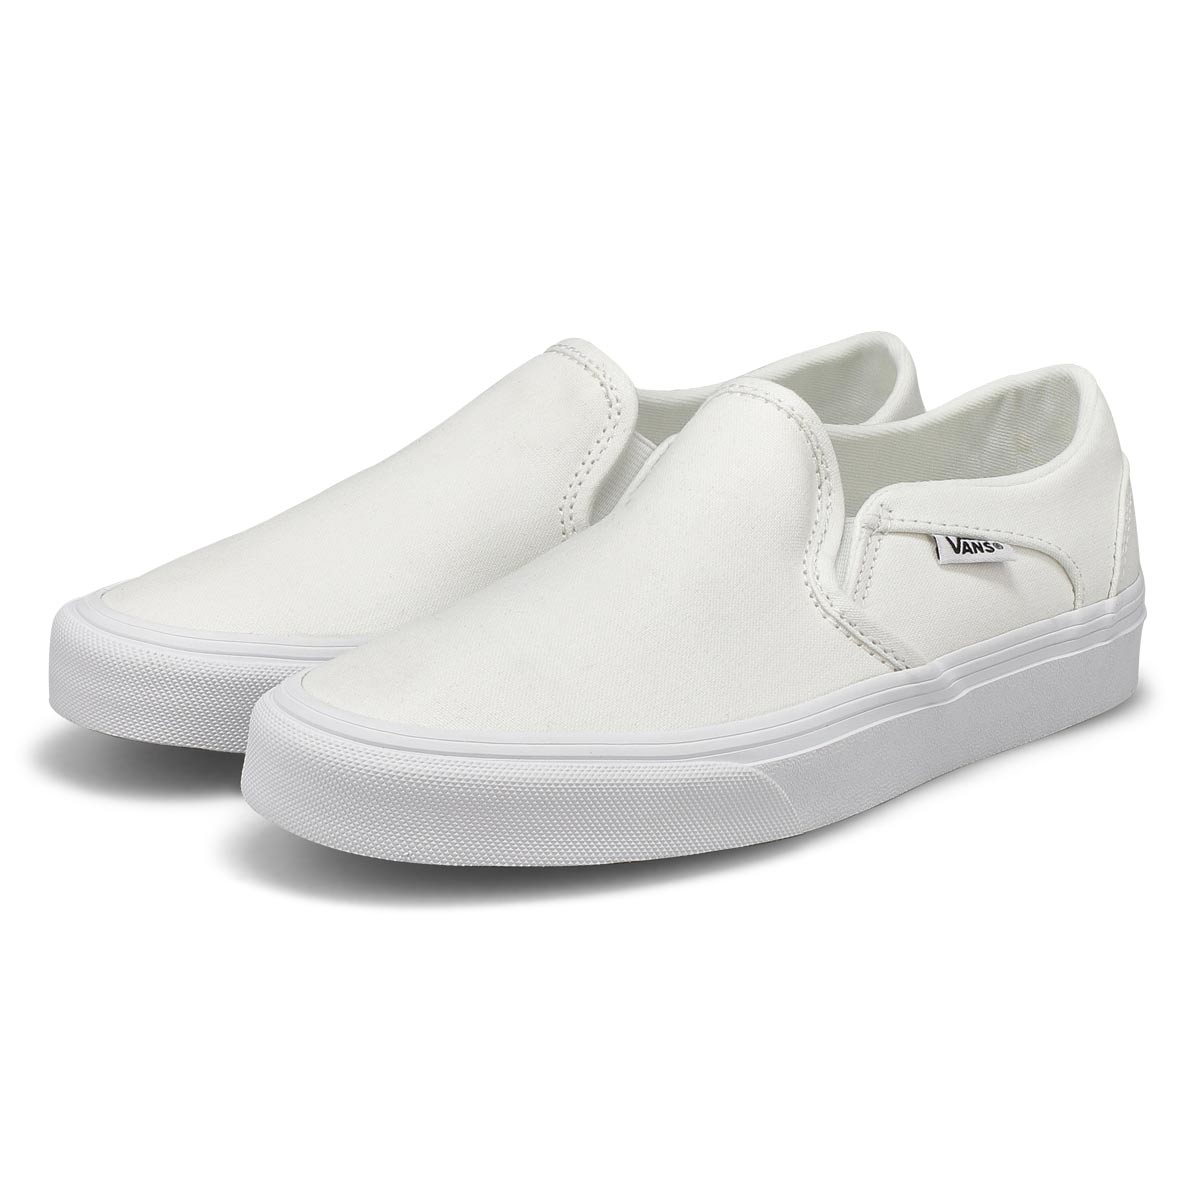 Vans Women's Asher Slip On Sneaker - White/Wh | SoftMoc.com